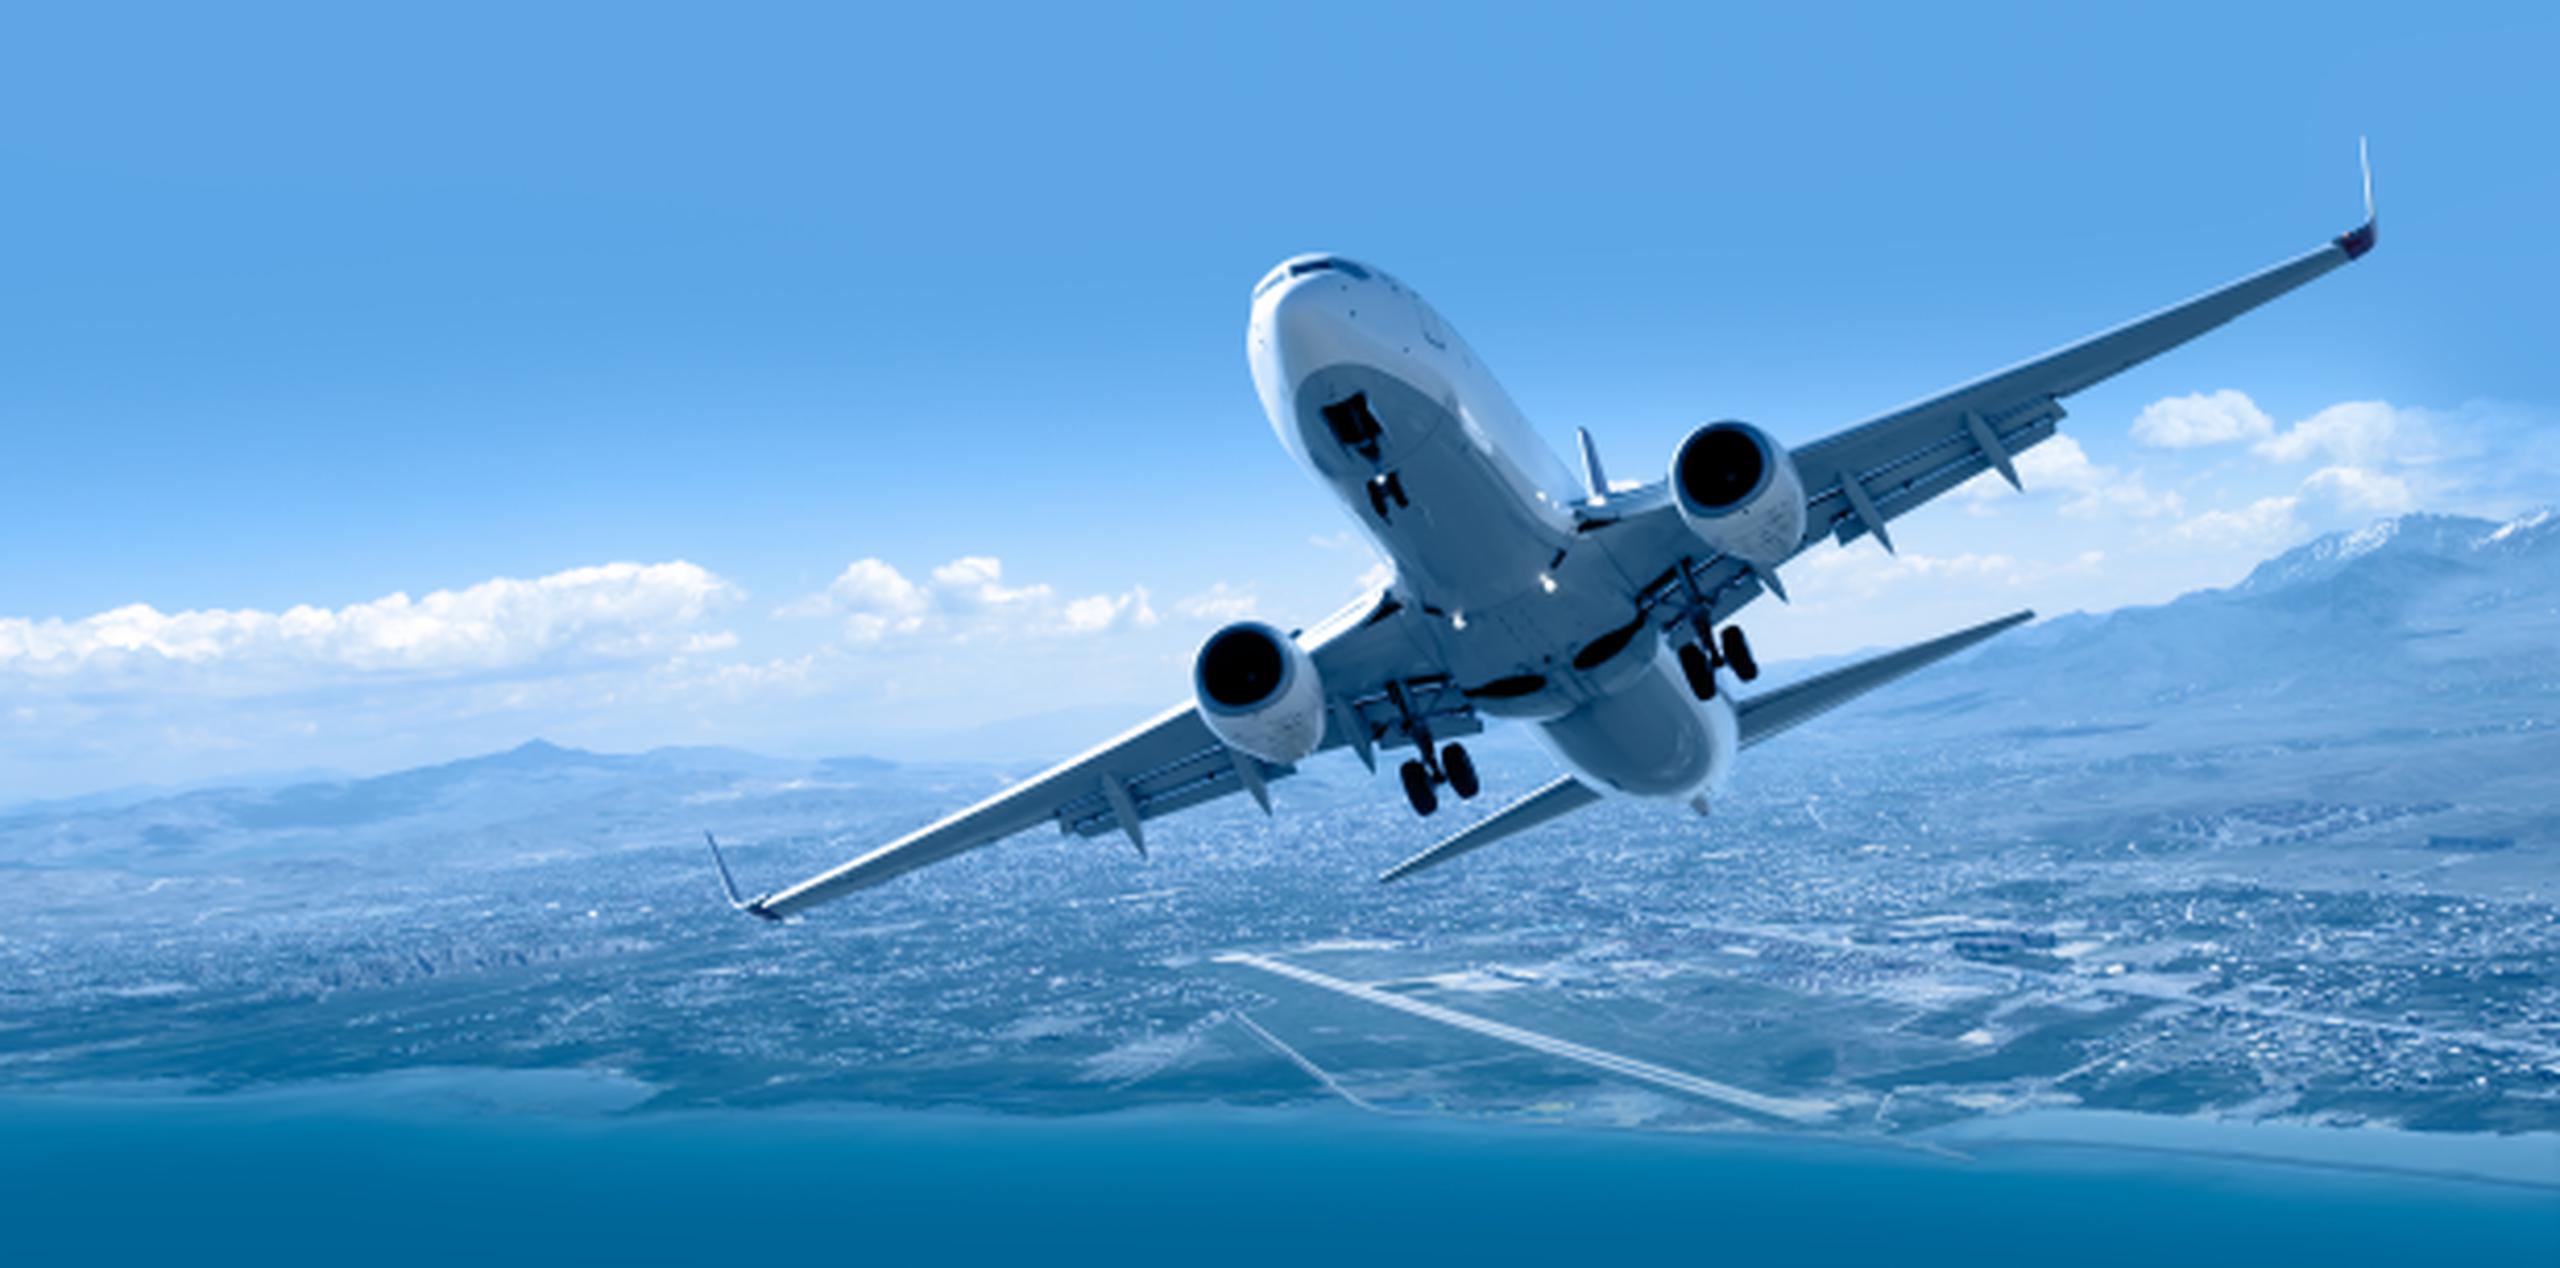 Los primeros o últimos vuelos del día suelen ser más económicos. (Shutterstock)